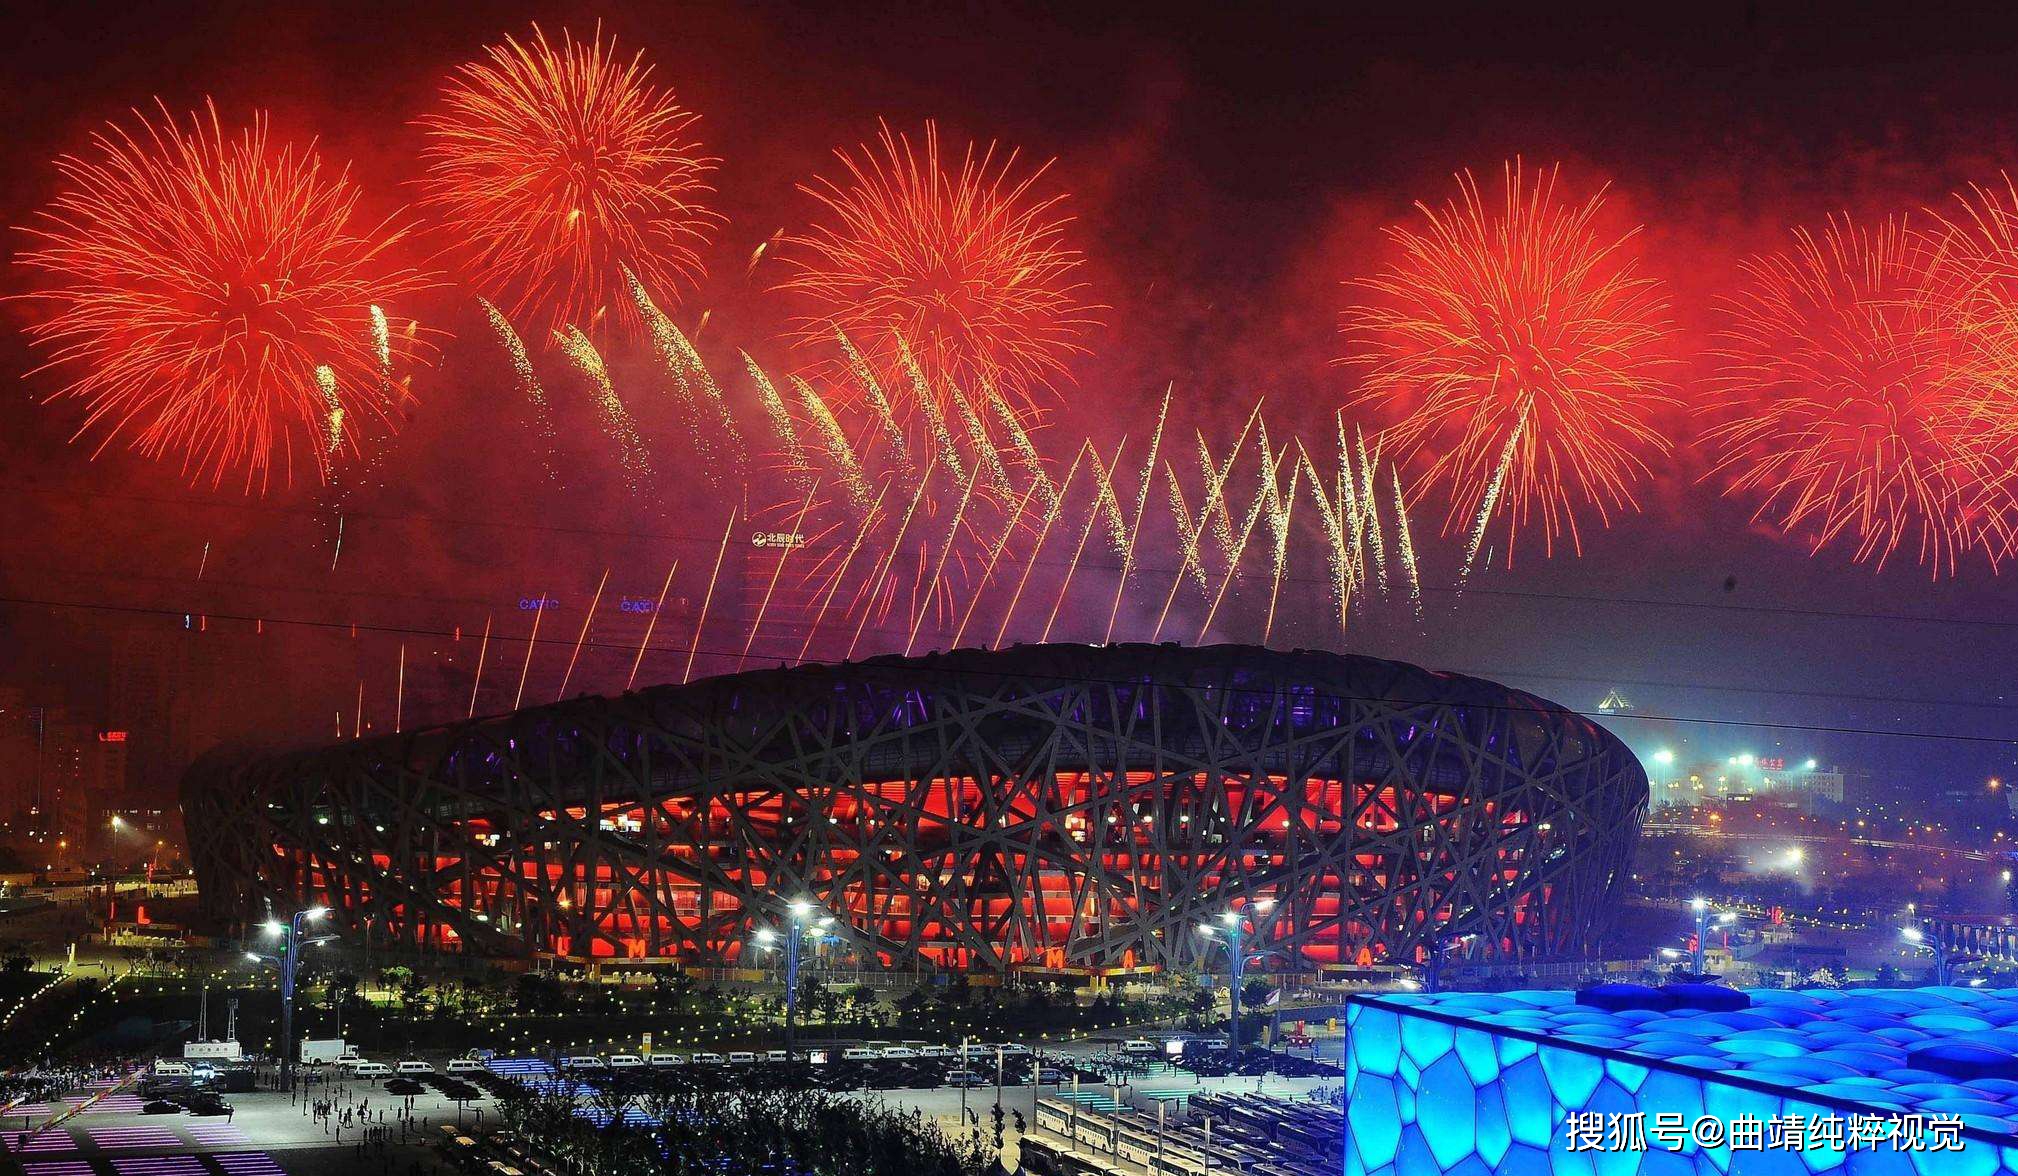 北京申奥成功,中国举办第29届奥运会,开幕式盛大场面你还记得多少